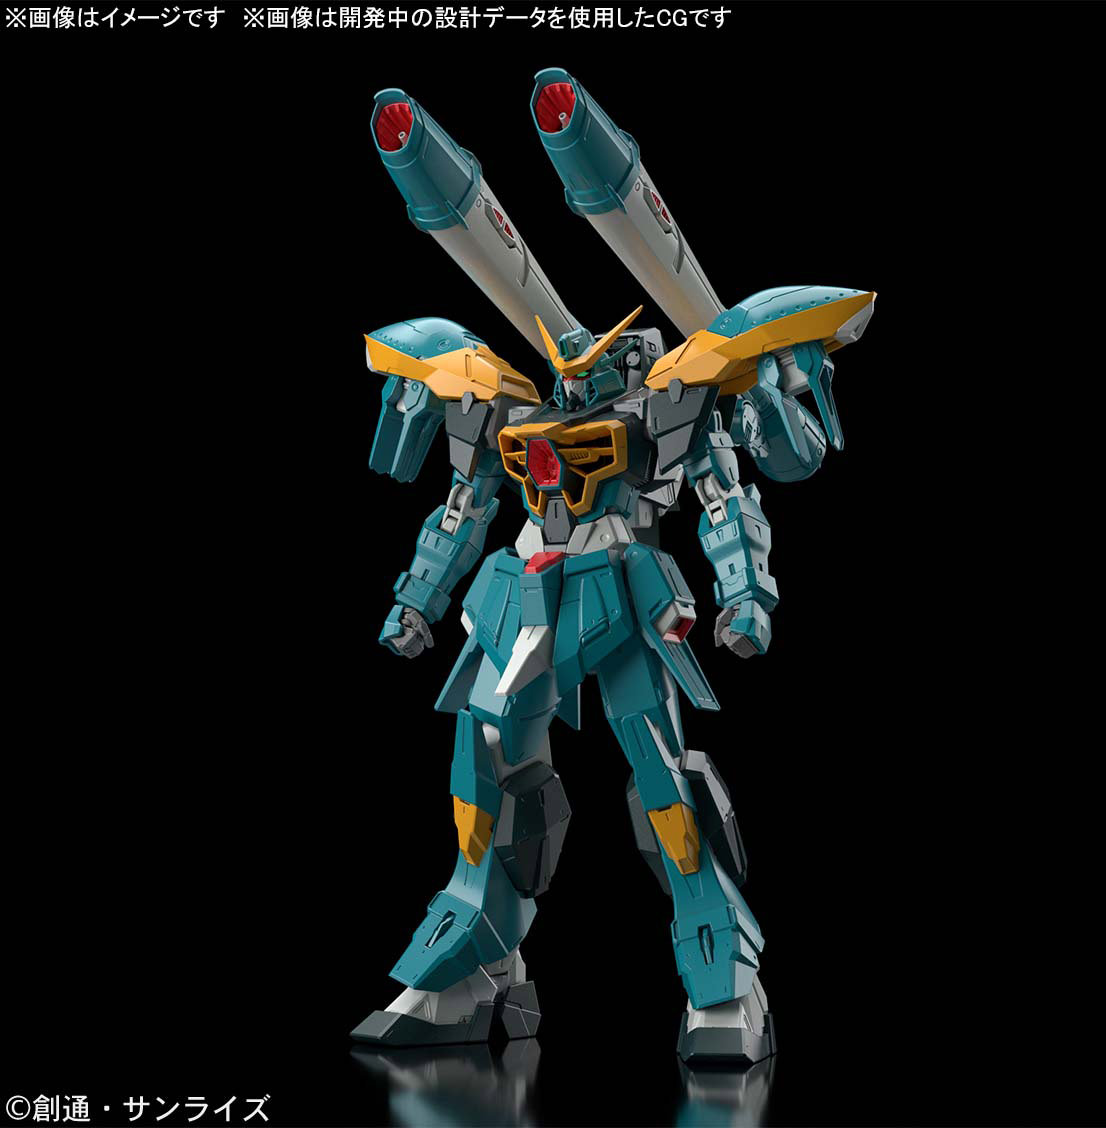 Maquette Gundam Gunpla Full Mechanics 1/100 01 Calamity Gundam